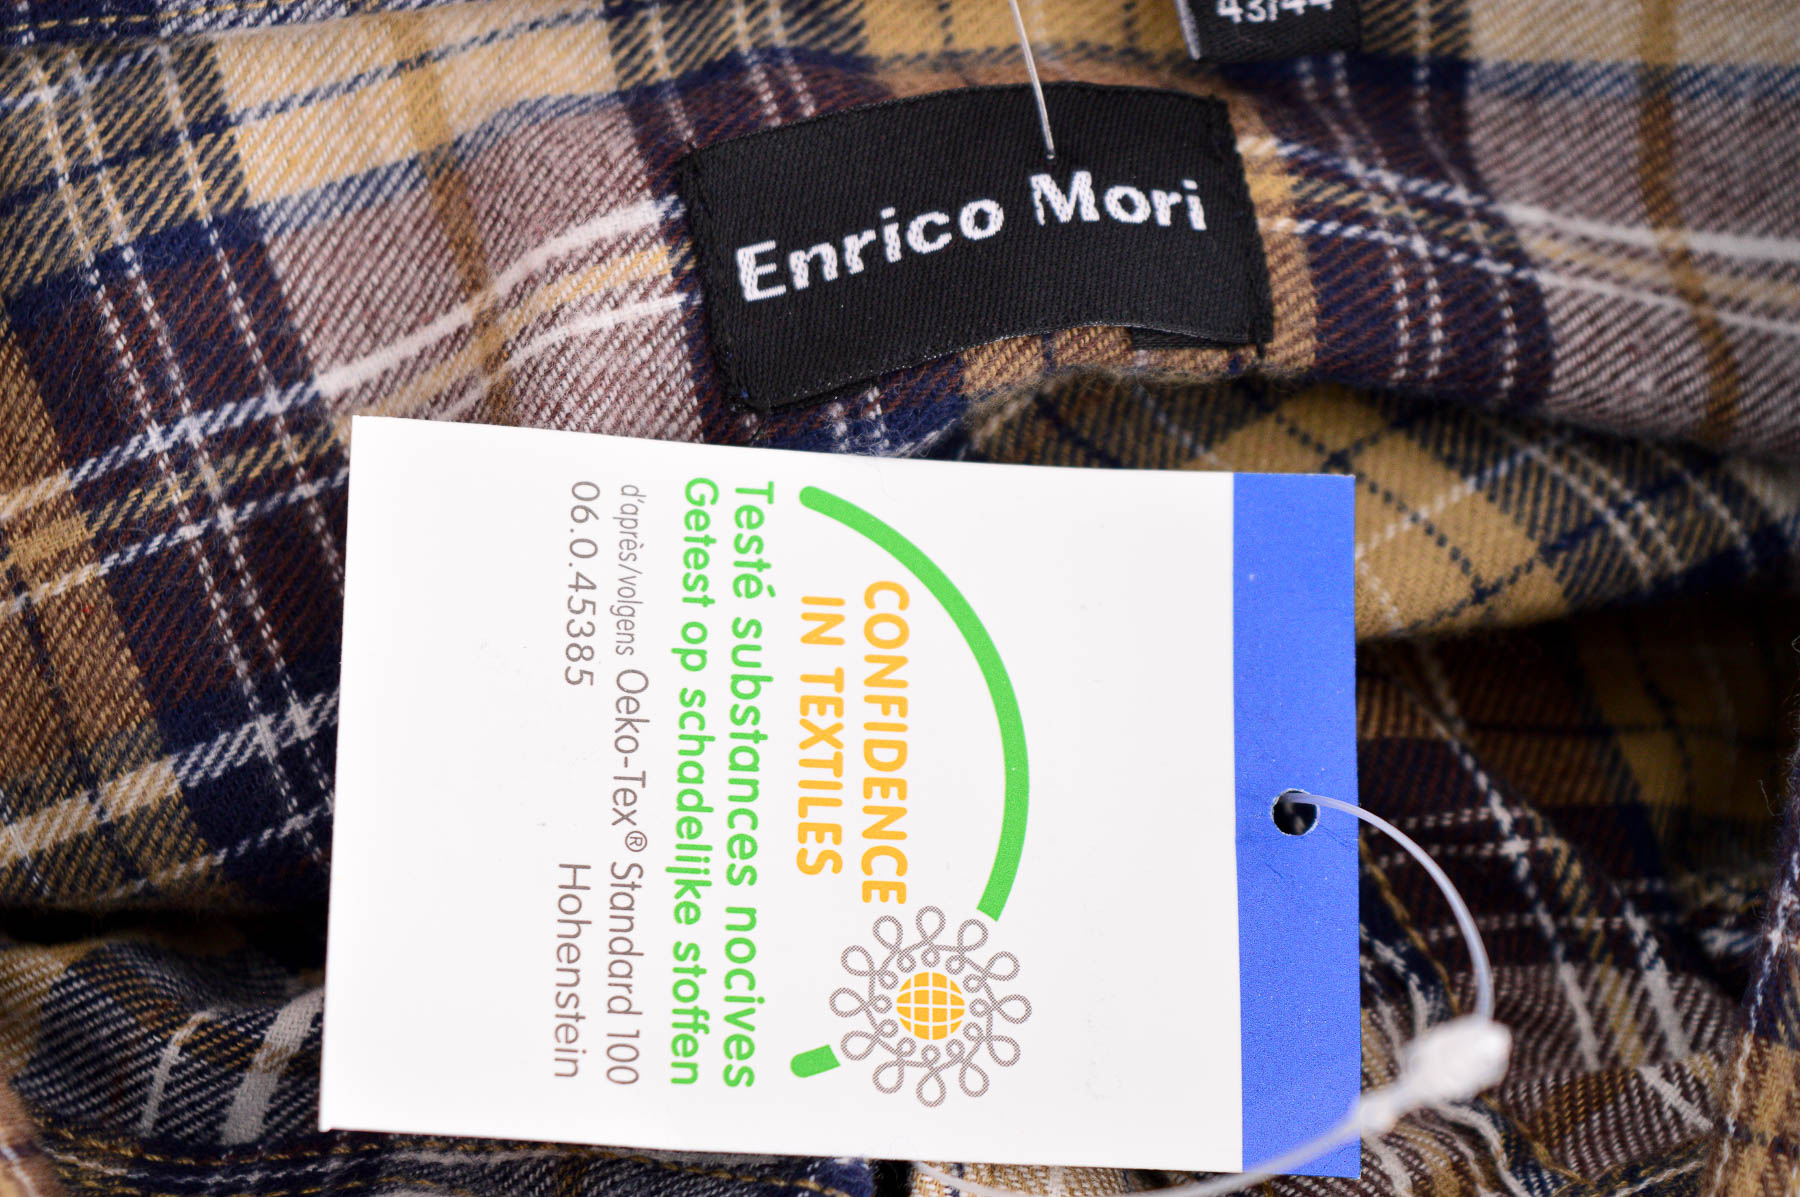 Męska koszula - Enrico Mori - 2